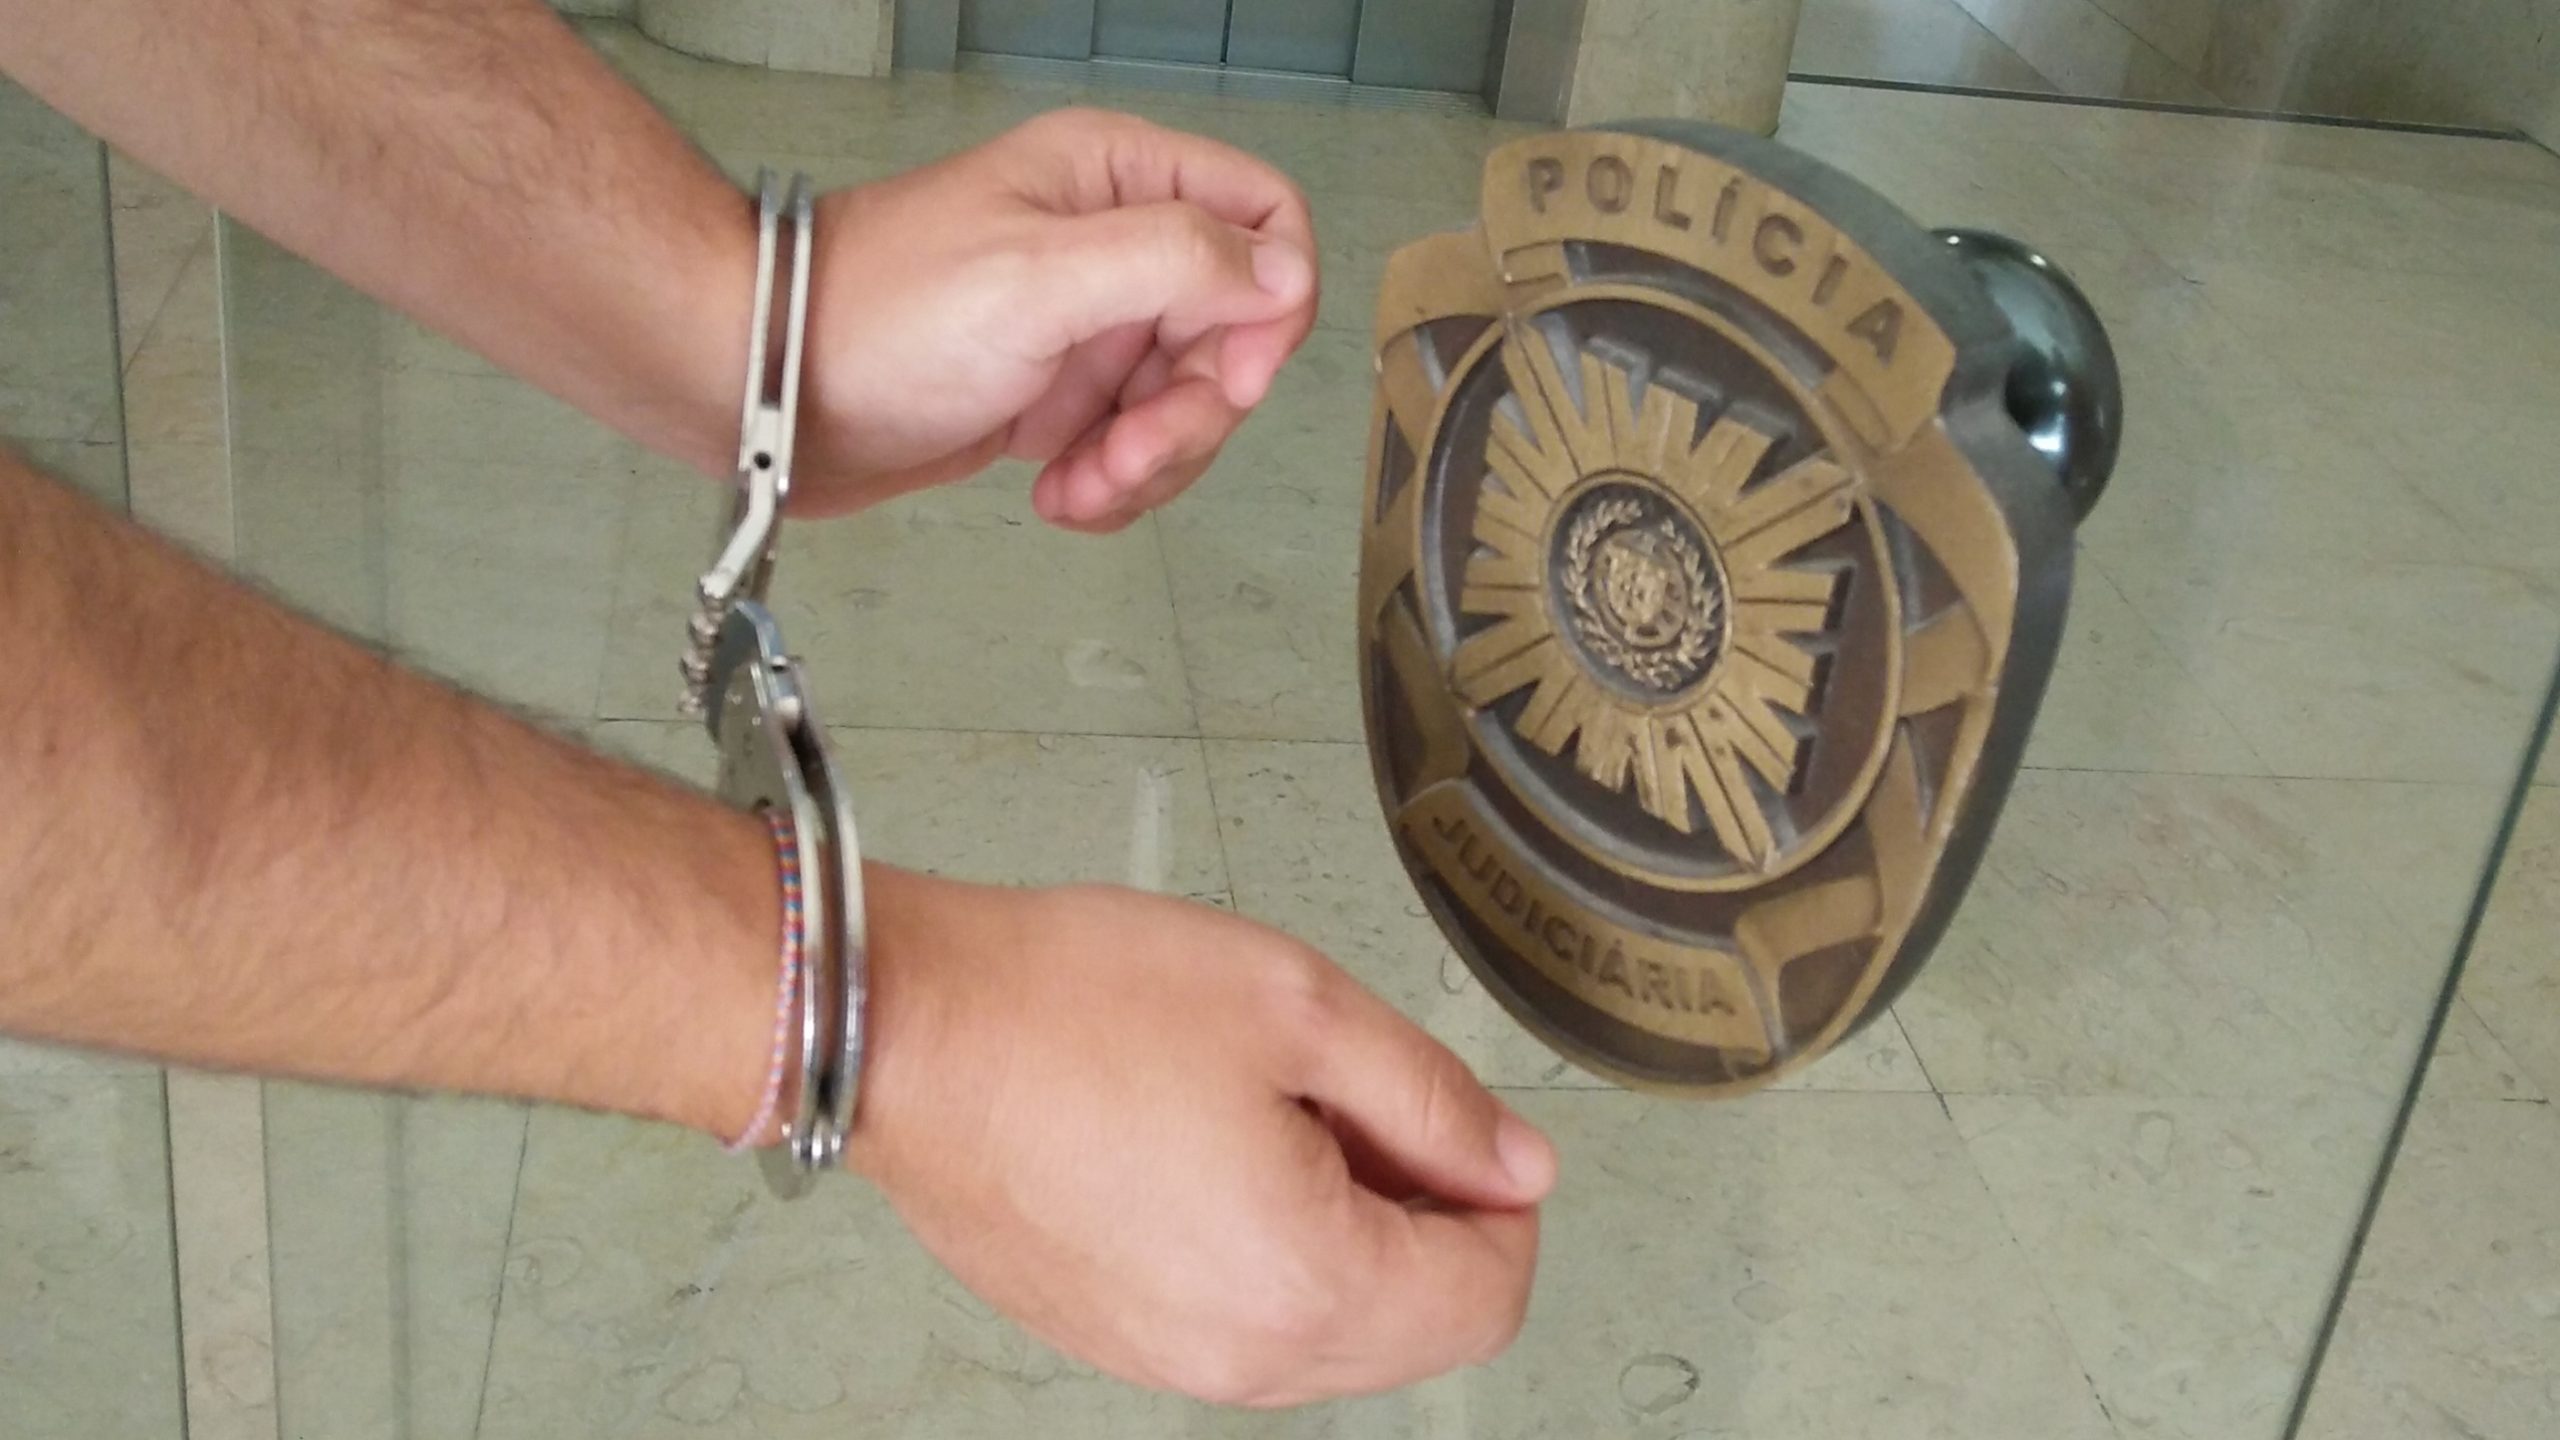 Homem detido depois de comprar 31 mil euros em ouro com cartão roubado a turista